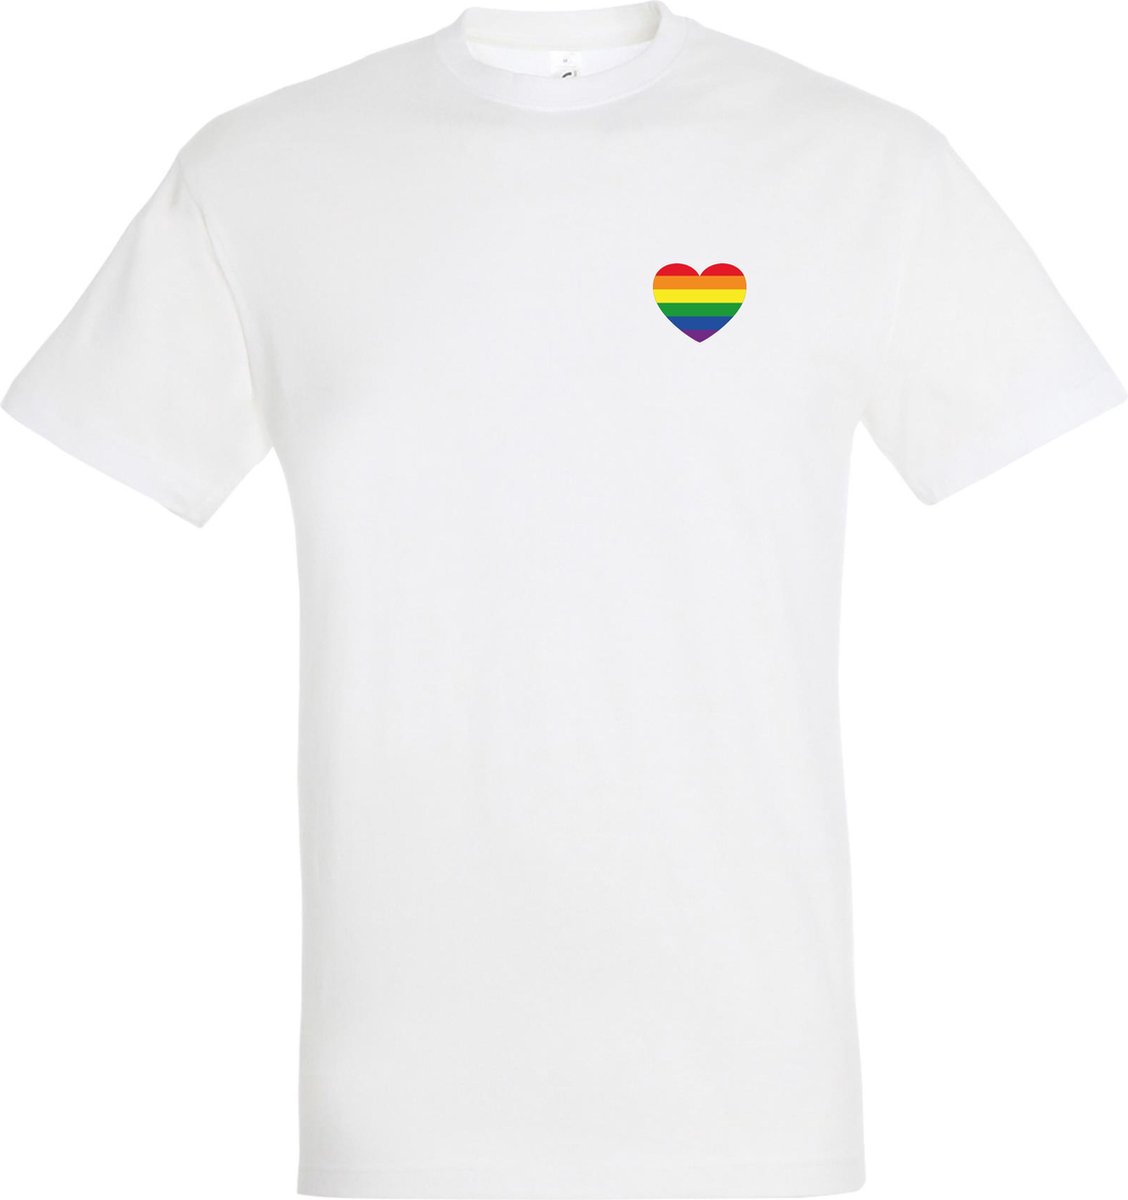 T-shirt Regenboog hartje | Regenboog vlag | Gay pride kleding | Pride shirt | Wit | maat L